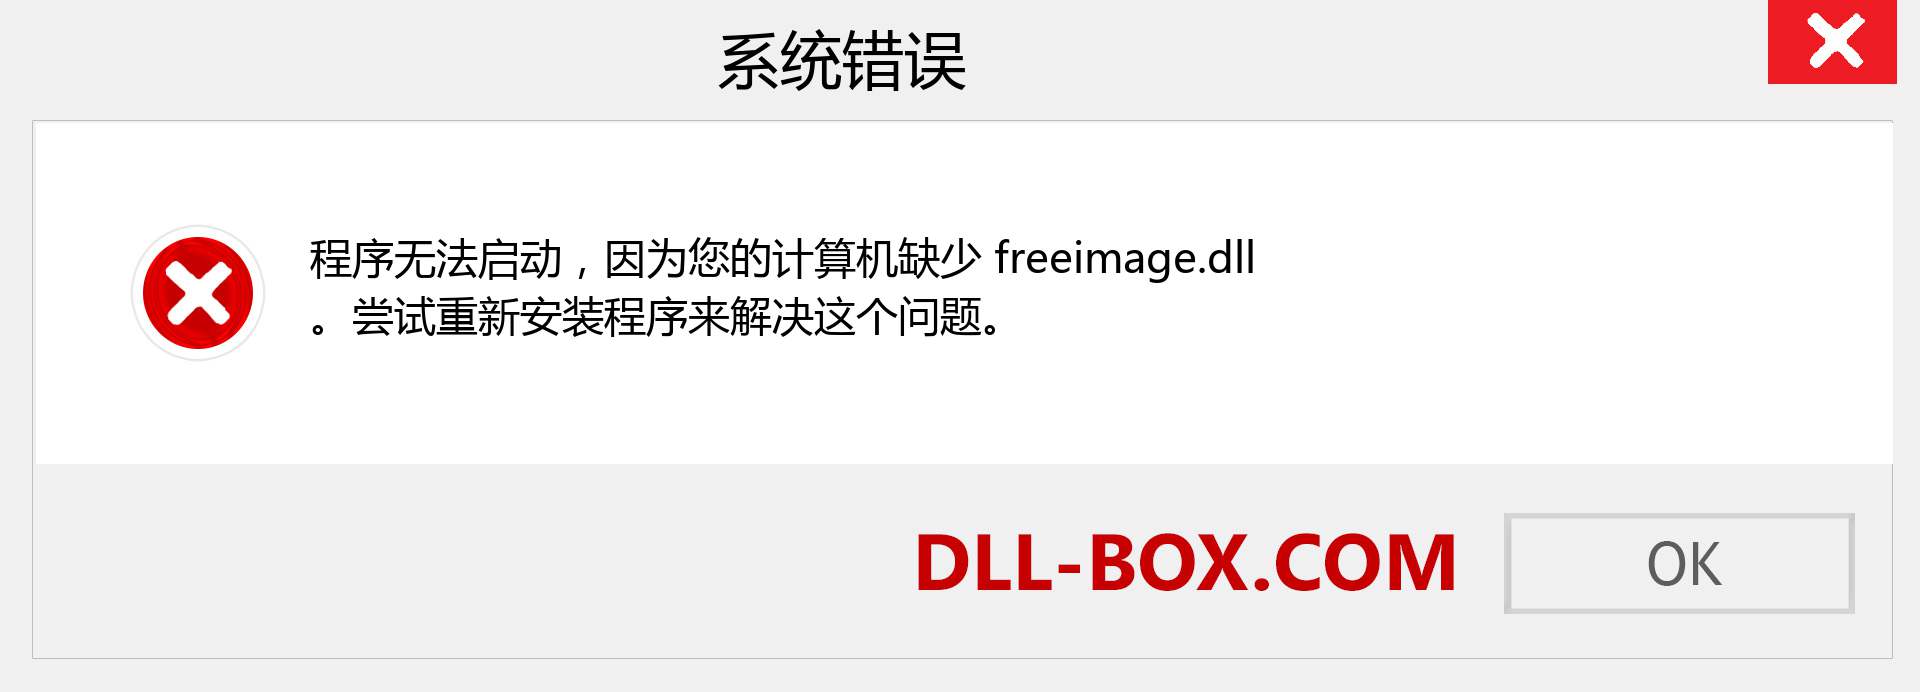 freeimage.dll 文件丢失？。 适用于 Windows 7、8、10 的下载 - 修复 Windows、照片、图像上的 freeimage dll 丢失错误